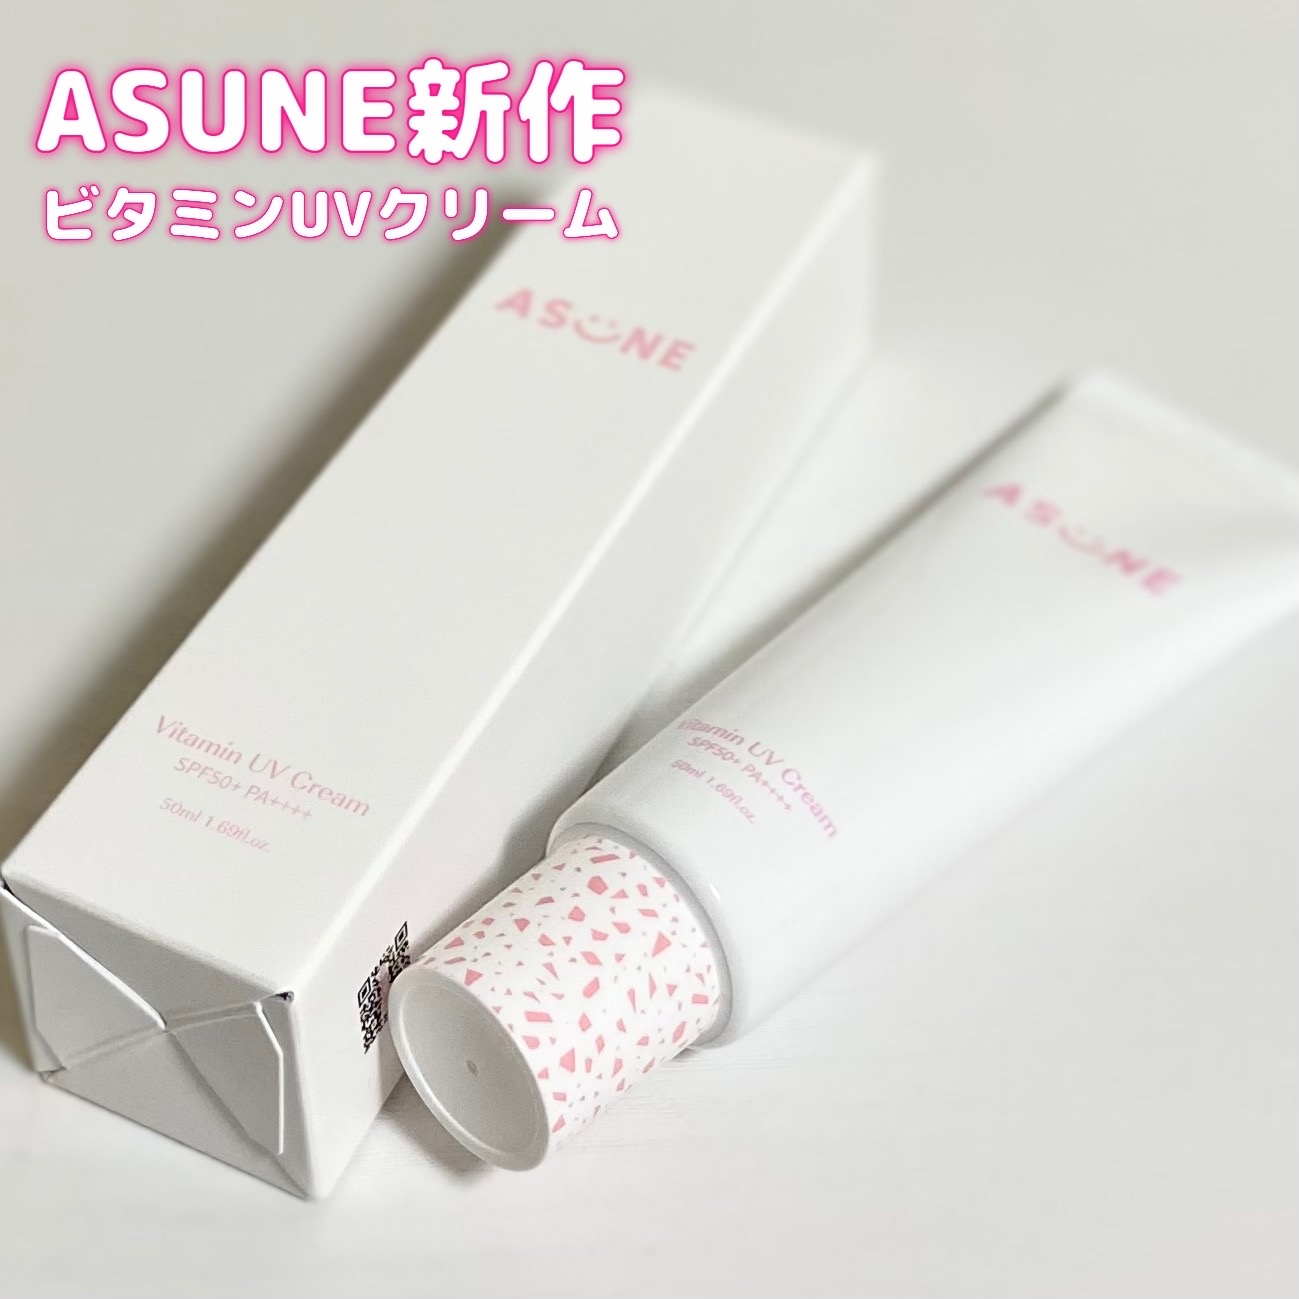 ASUNE(アスネ) ビタミンUVクリームの良い点・メリットに関するSORAさんの口コミ画像1